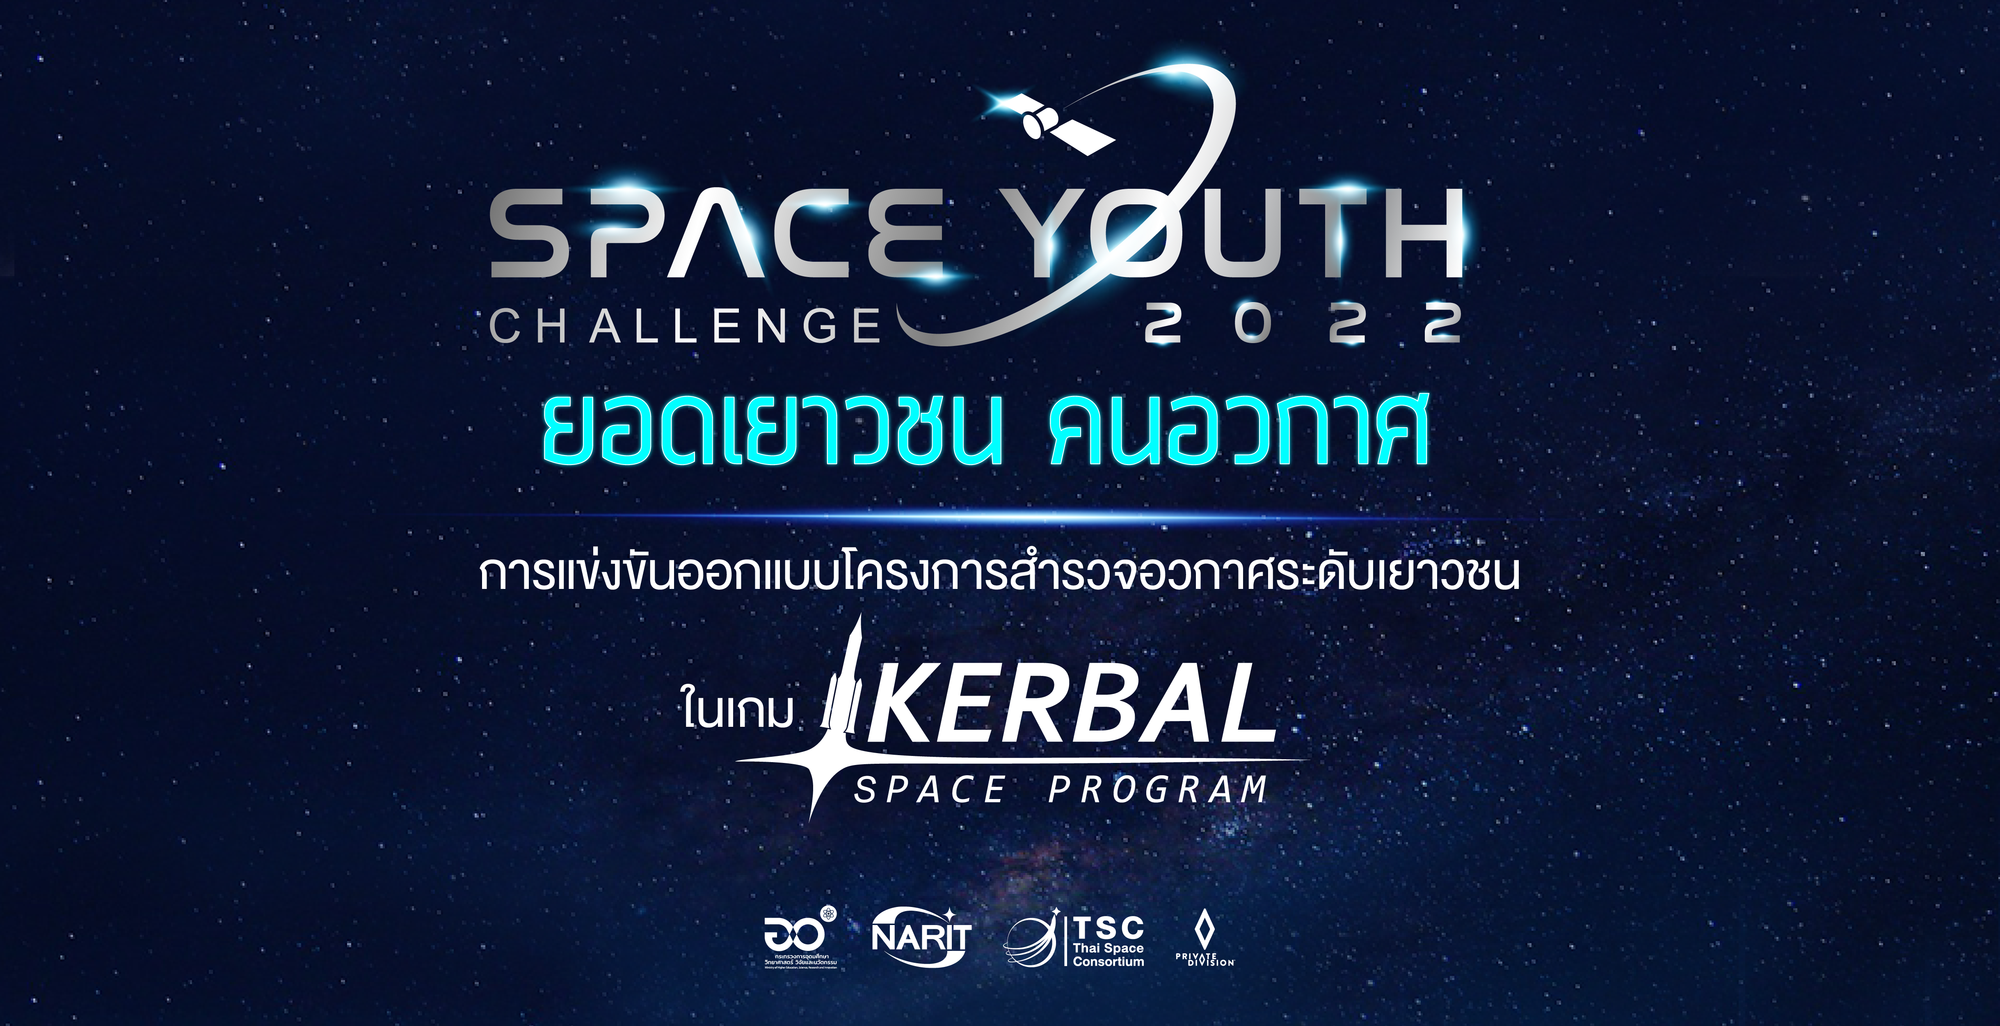 การแข่งขันออกแบบโครงการสำรวจอวกาศระดับเยาวชน